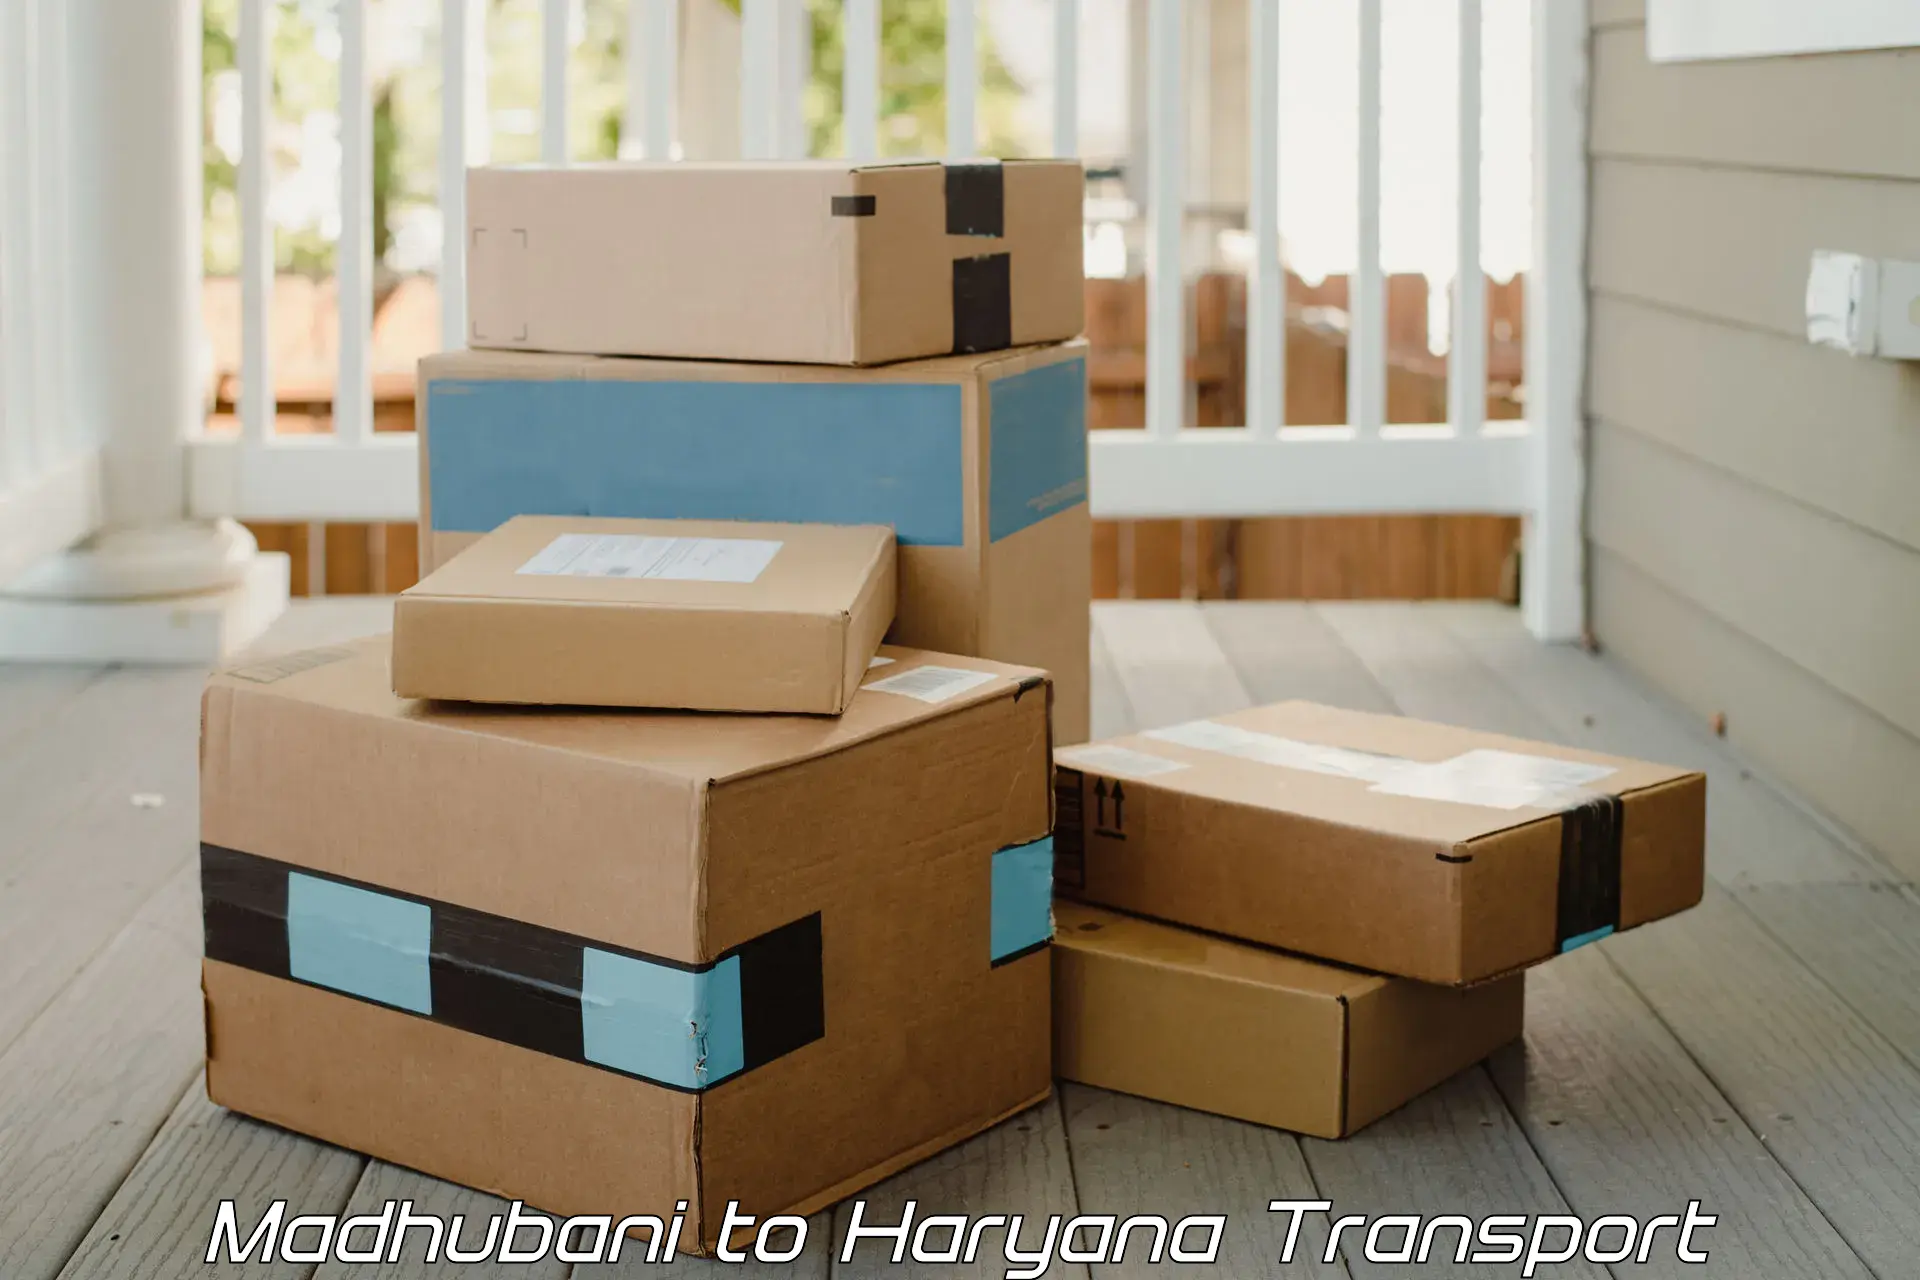 Domestic goods transportation services Madhubani to Gurugram